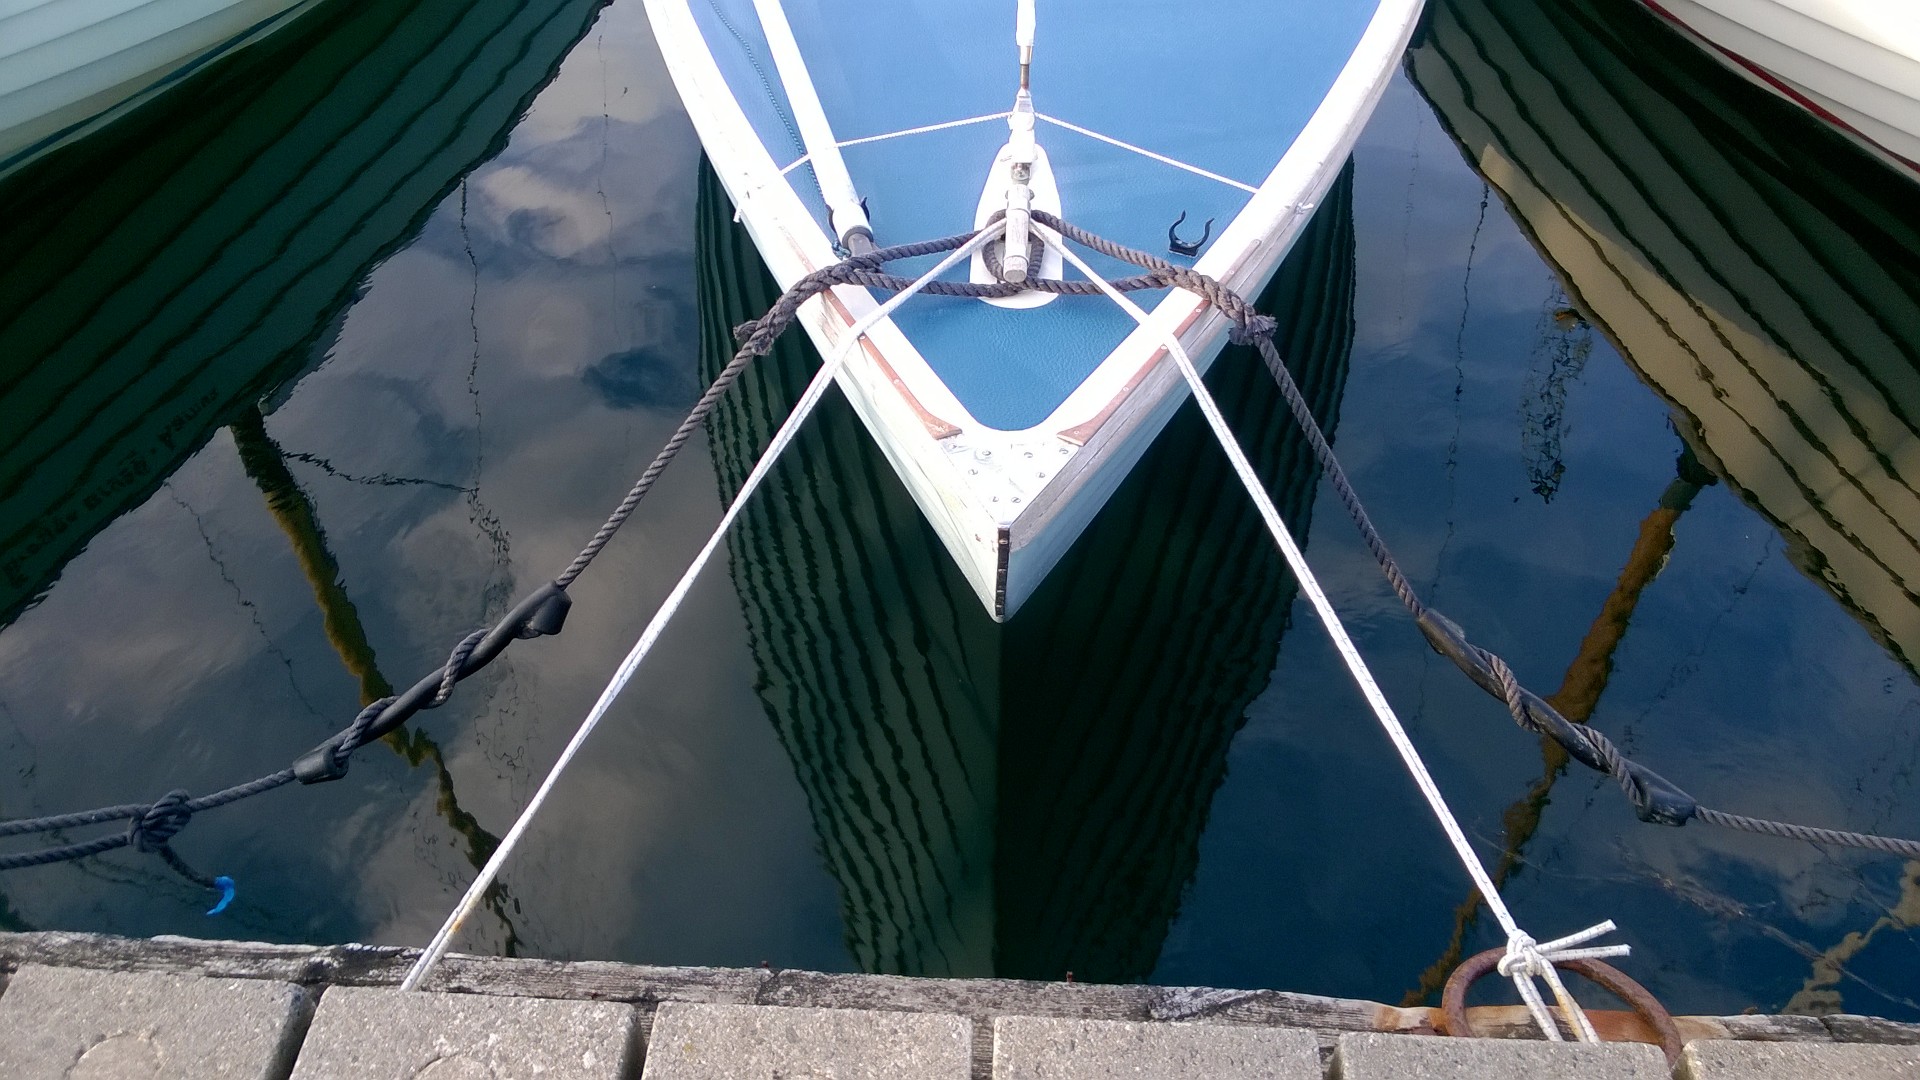 En elastik holder båden permanent tæt på broen, så afstanden fra broen til båden er kortere. Foto: Troels Lykke